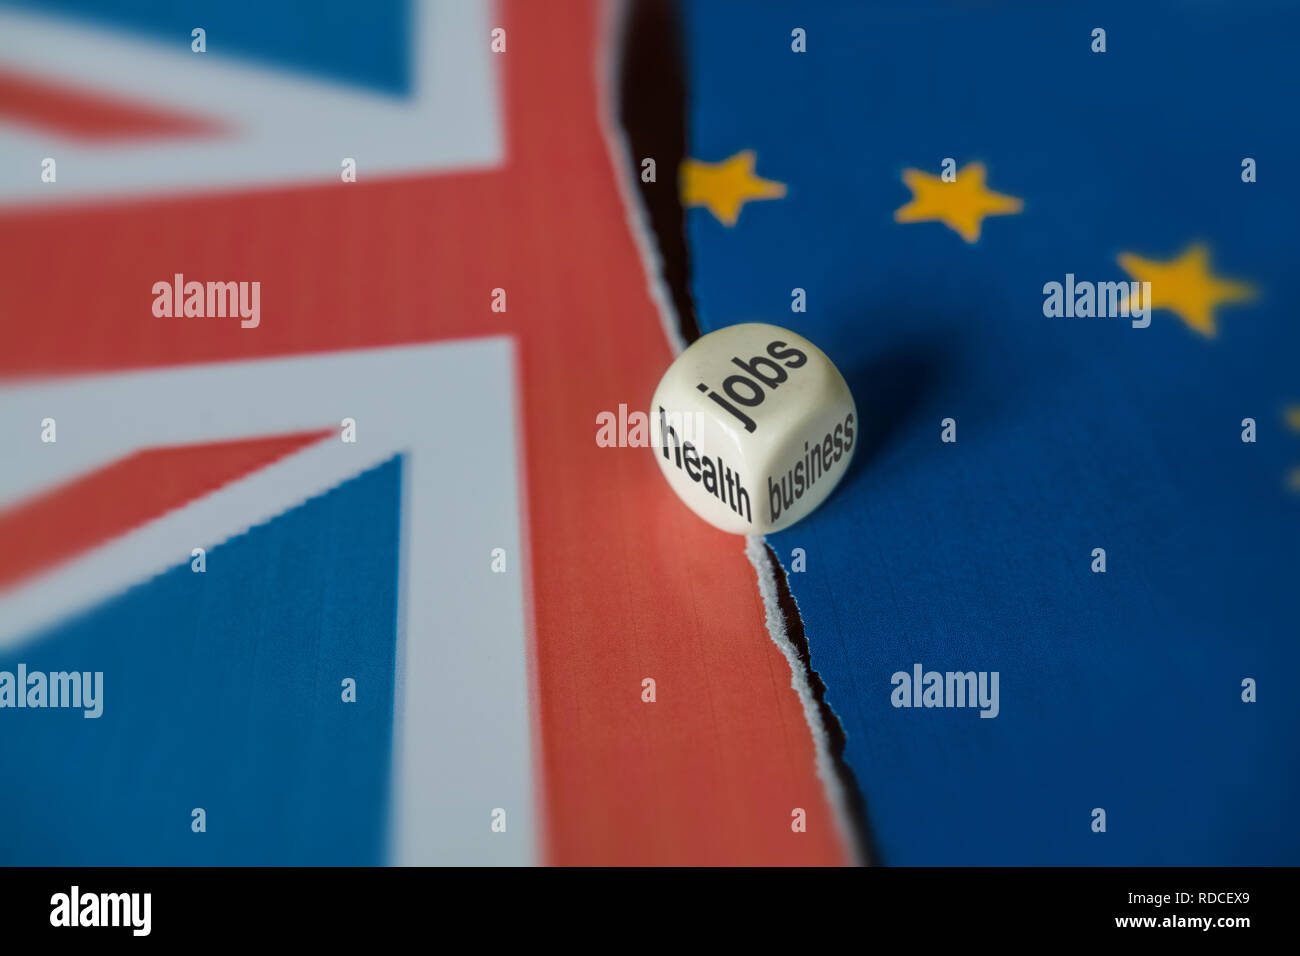 Un premier montage entre le Royaume-Uni et symboles de l'UE. Sur la surface, entre les deux drapeaux il y a un dé qui affiche trois côtés : l'emploi, de santé et d'affaires. Banque D'Images